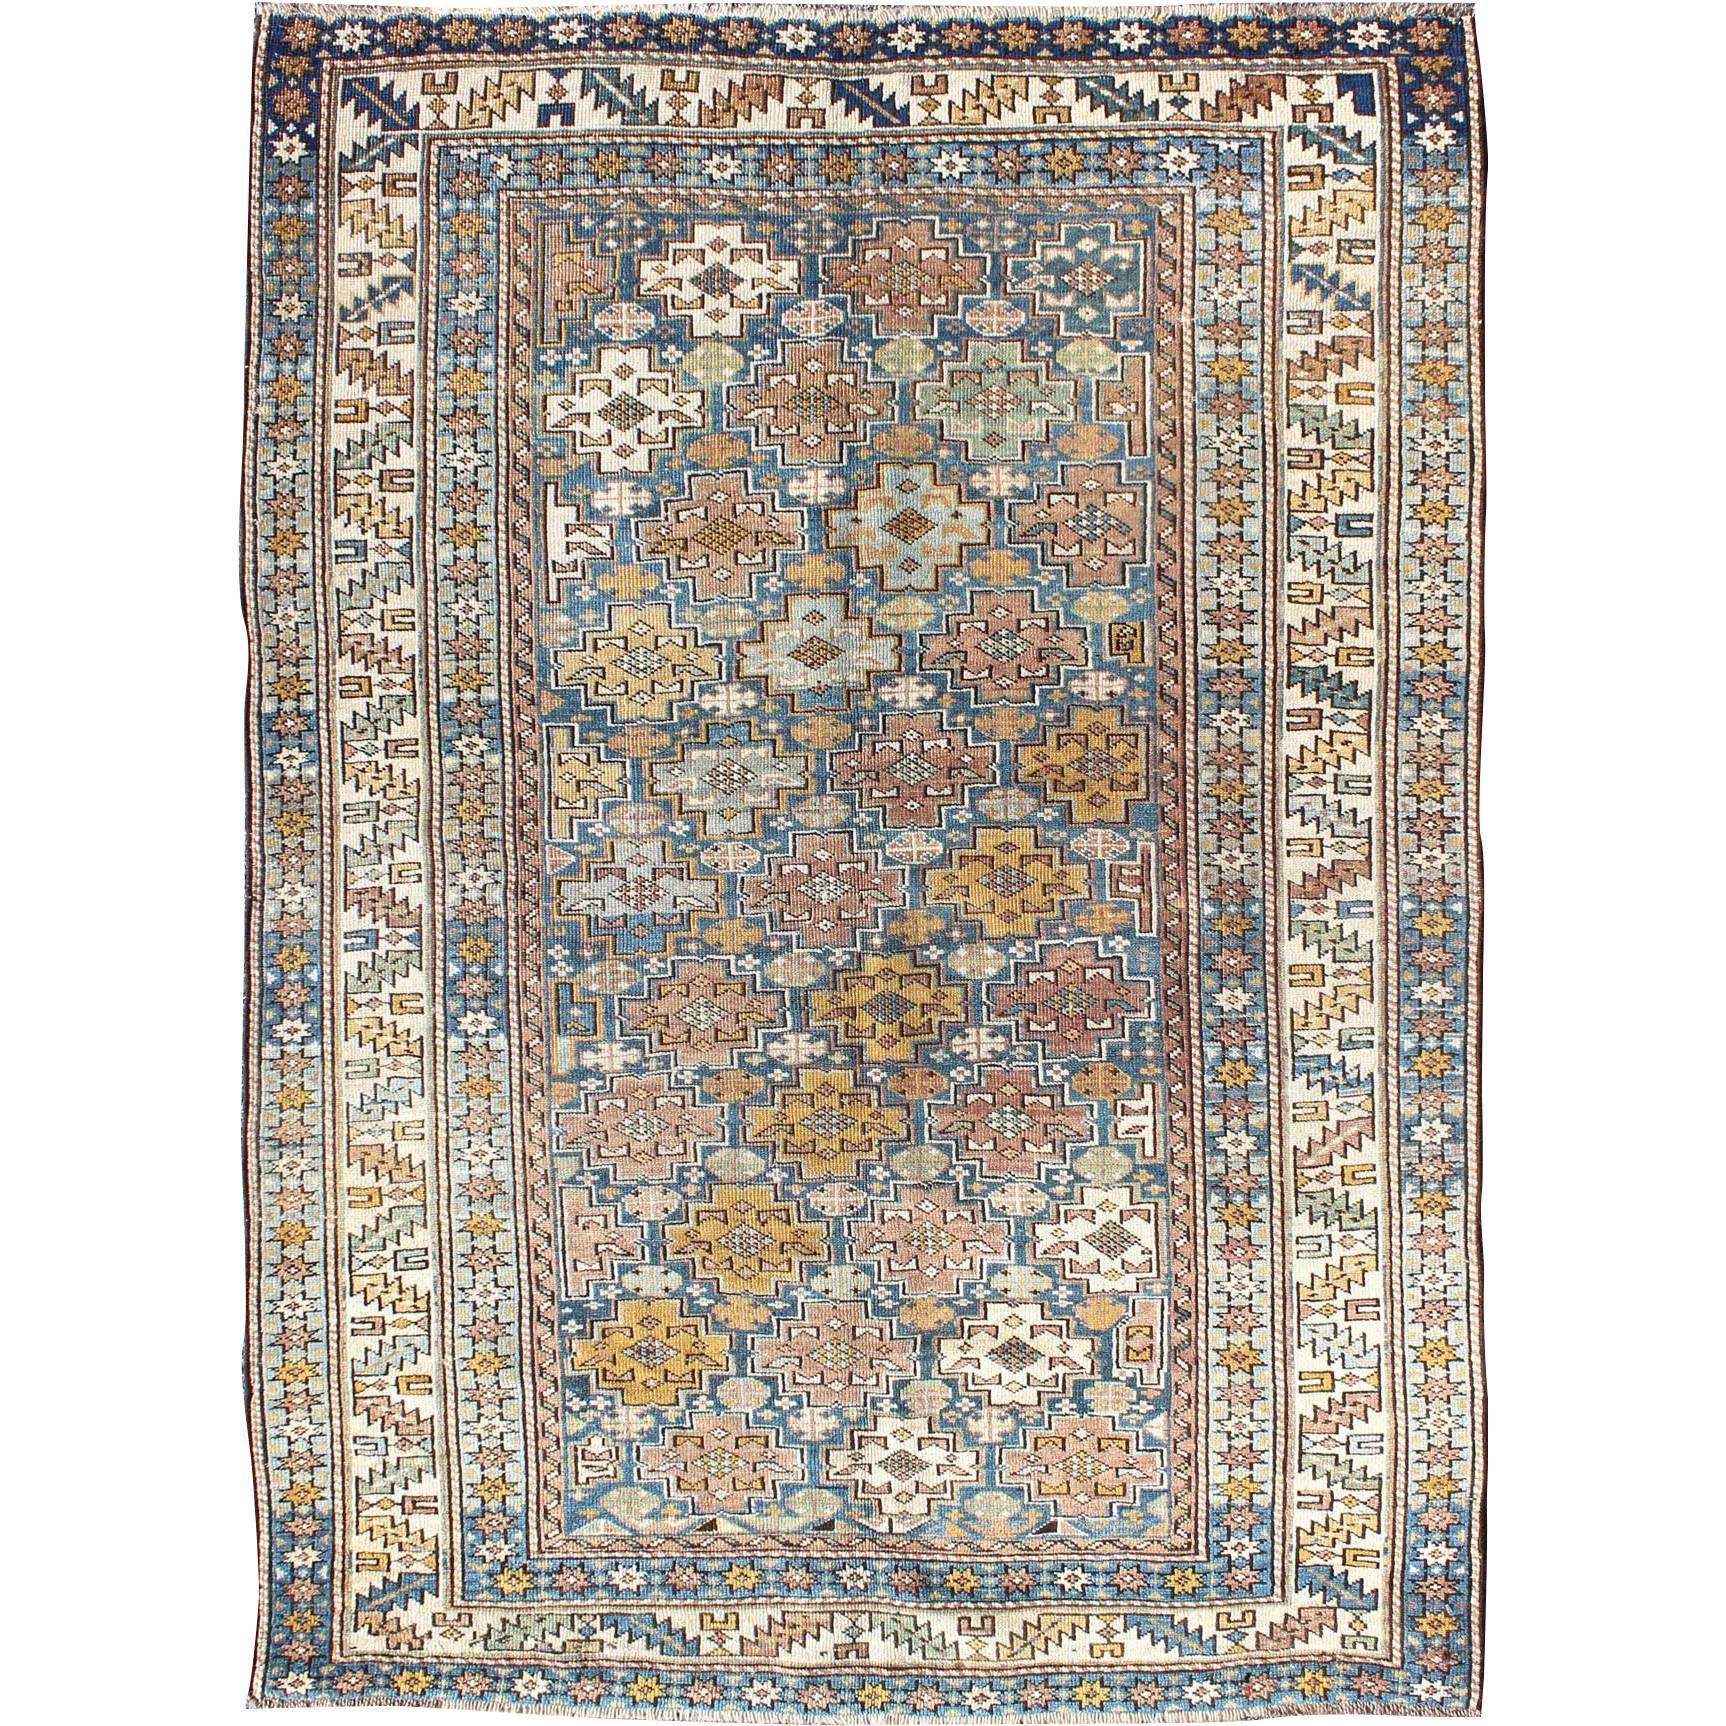 Antiker Schirwan-Teppich aus den 1900er Jahren mit bunten, kreuzförmigen Motiven